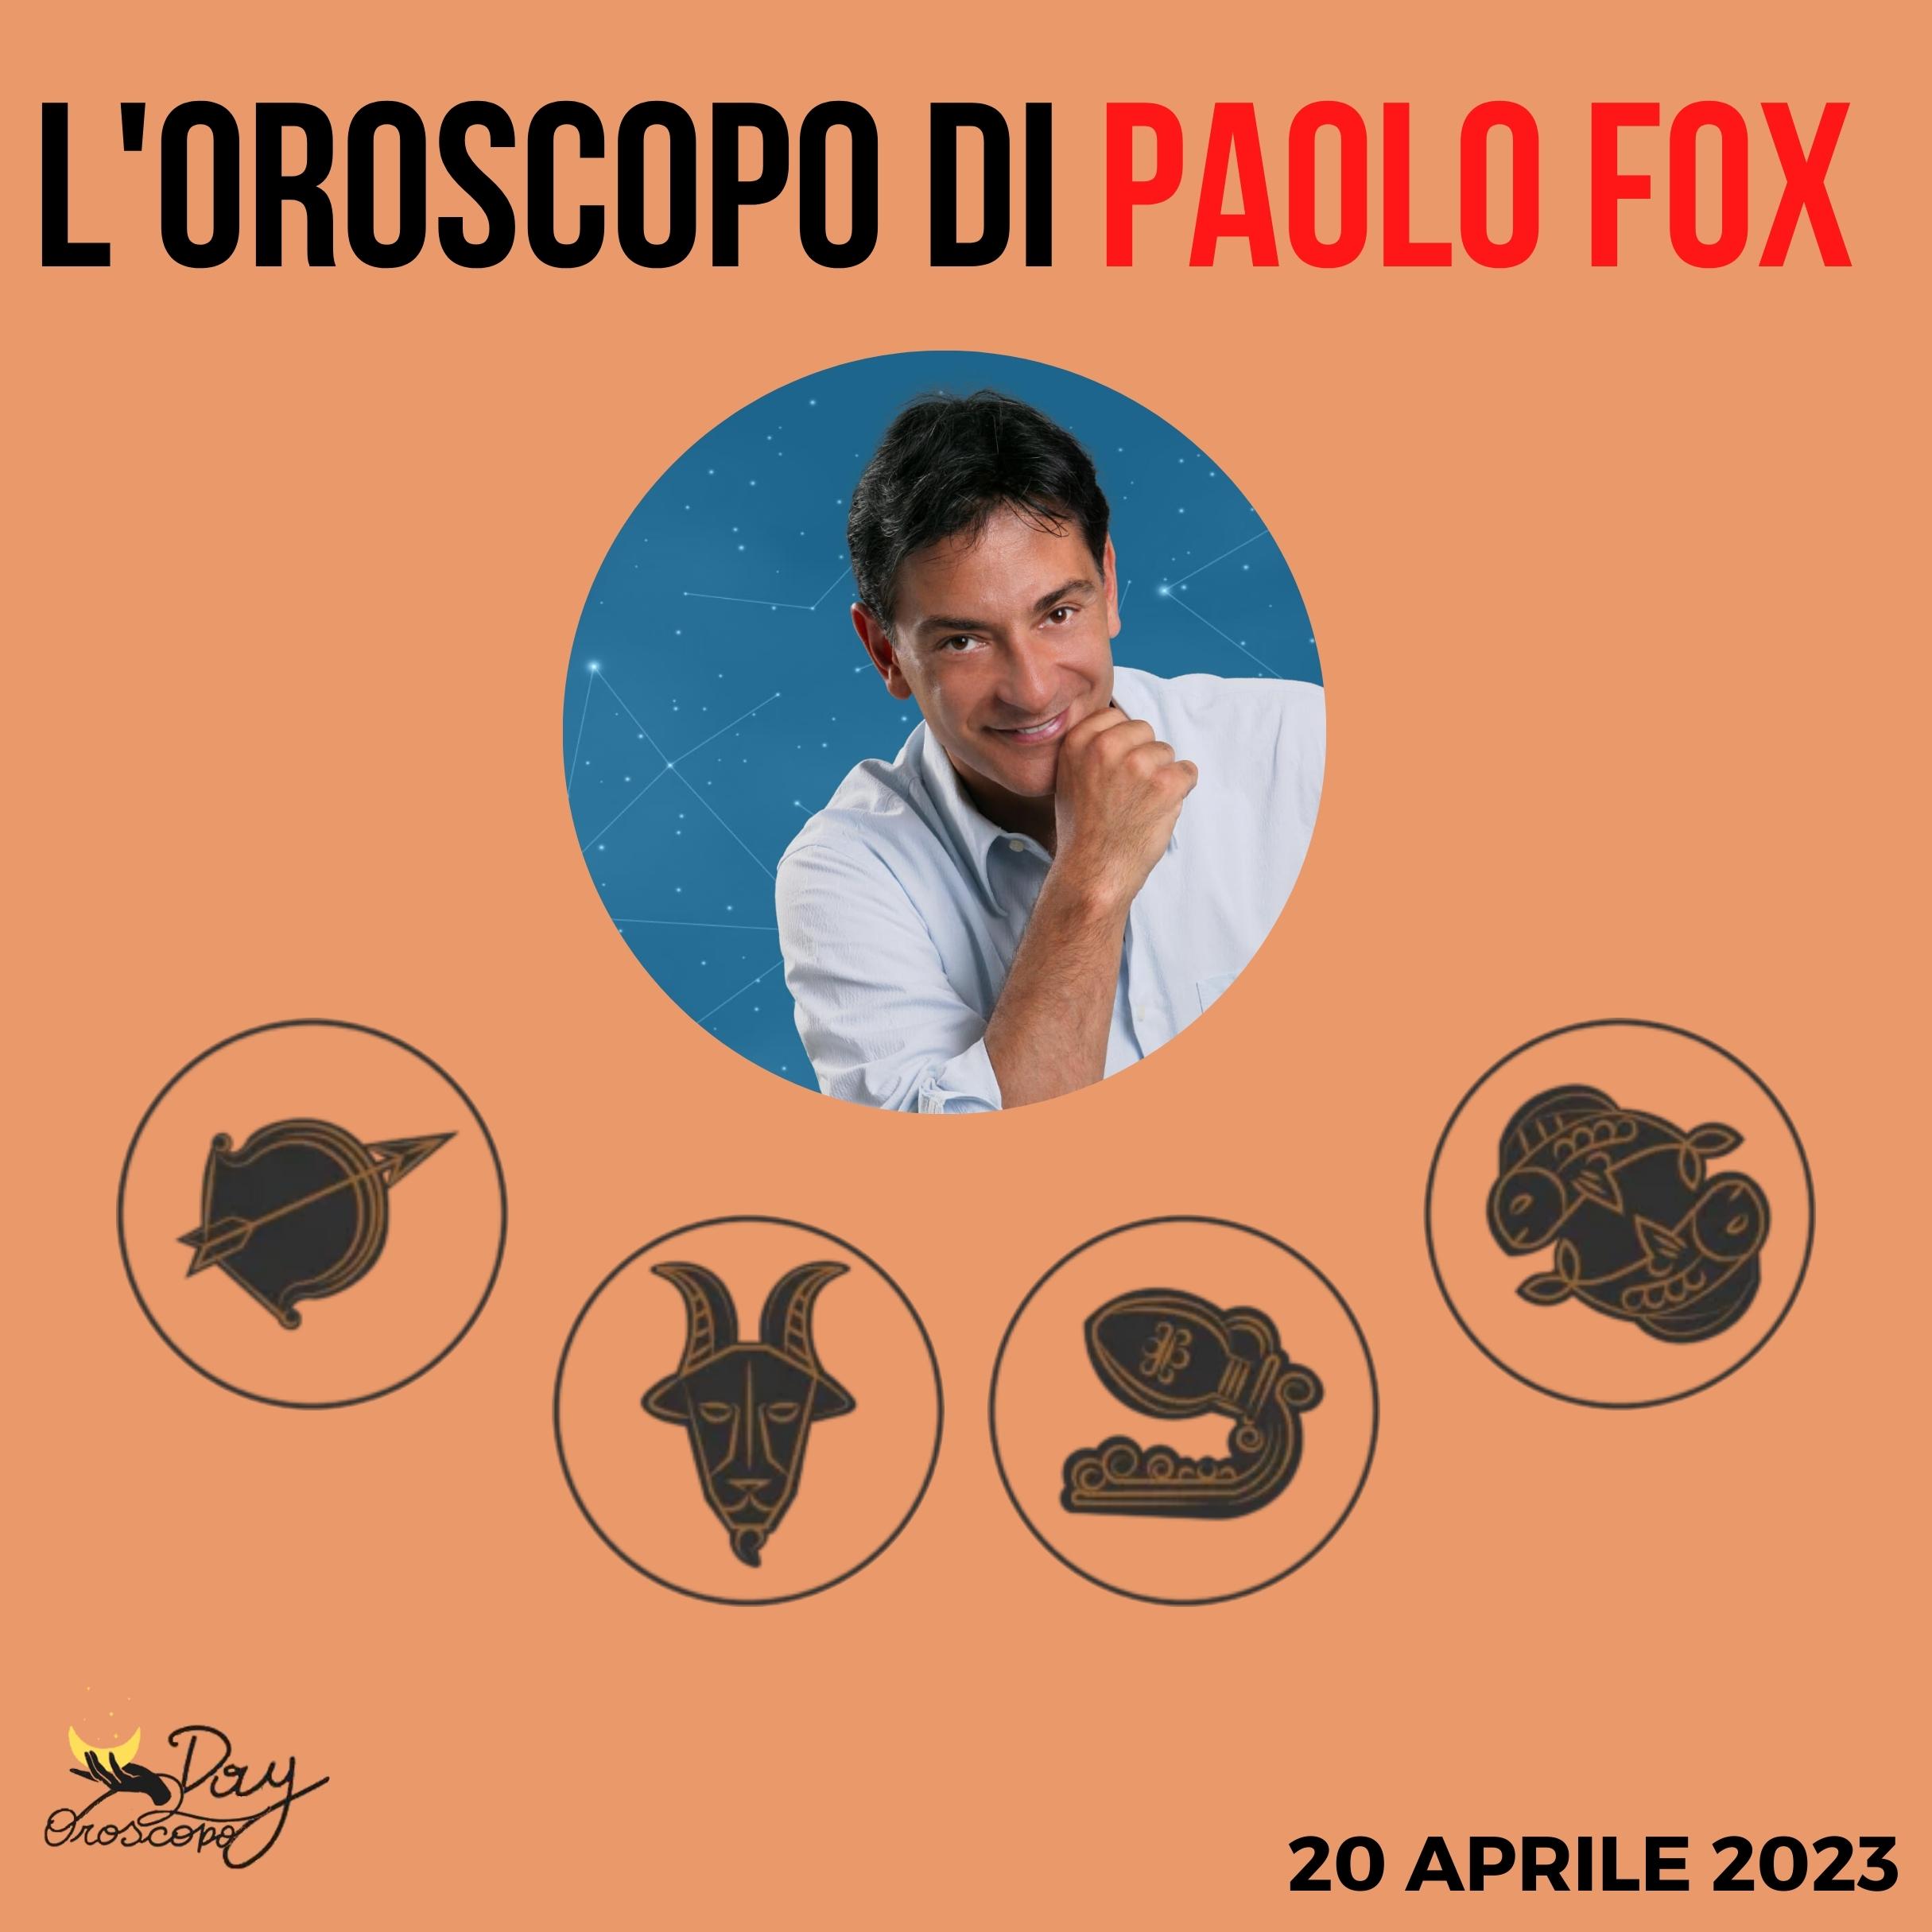 Oroscopo oggi domani Paolo Fox 20 aprile Sagittario Capricorno Acquario Pesci